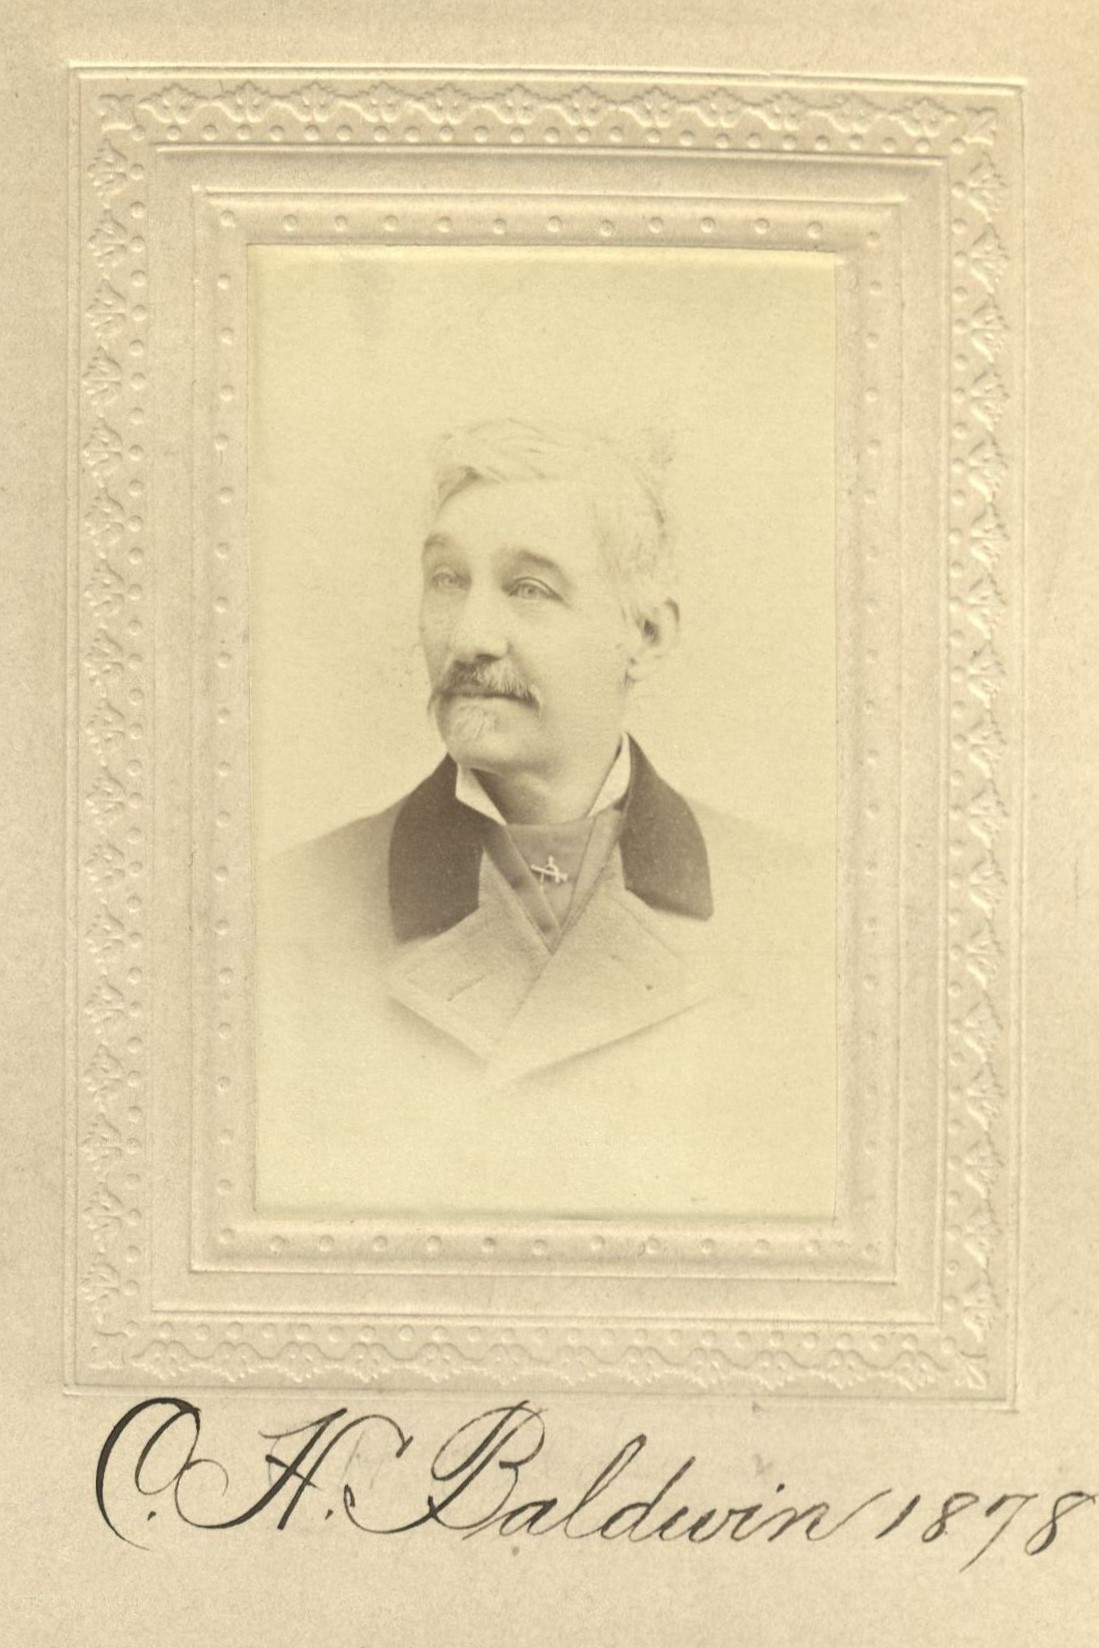 Member portrait of Charles H. Baldwin